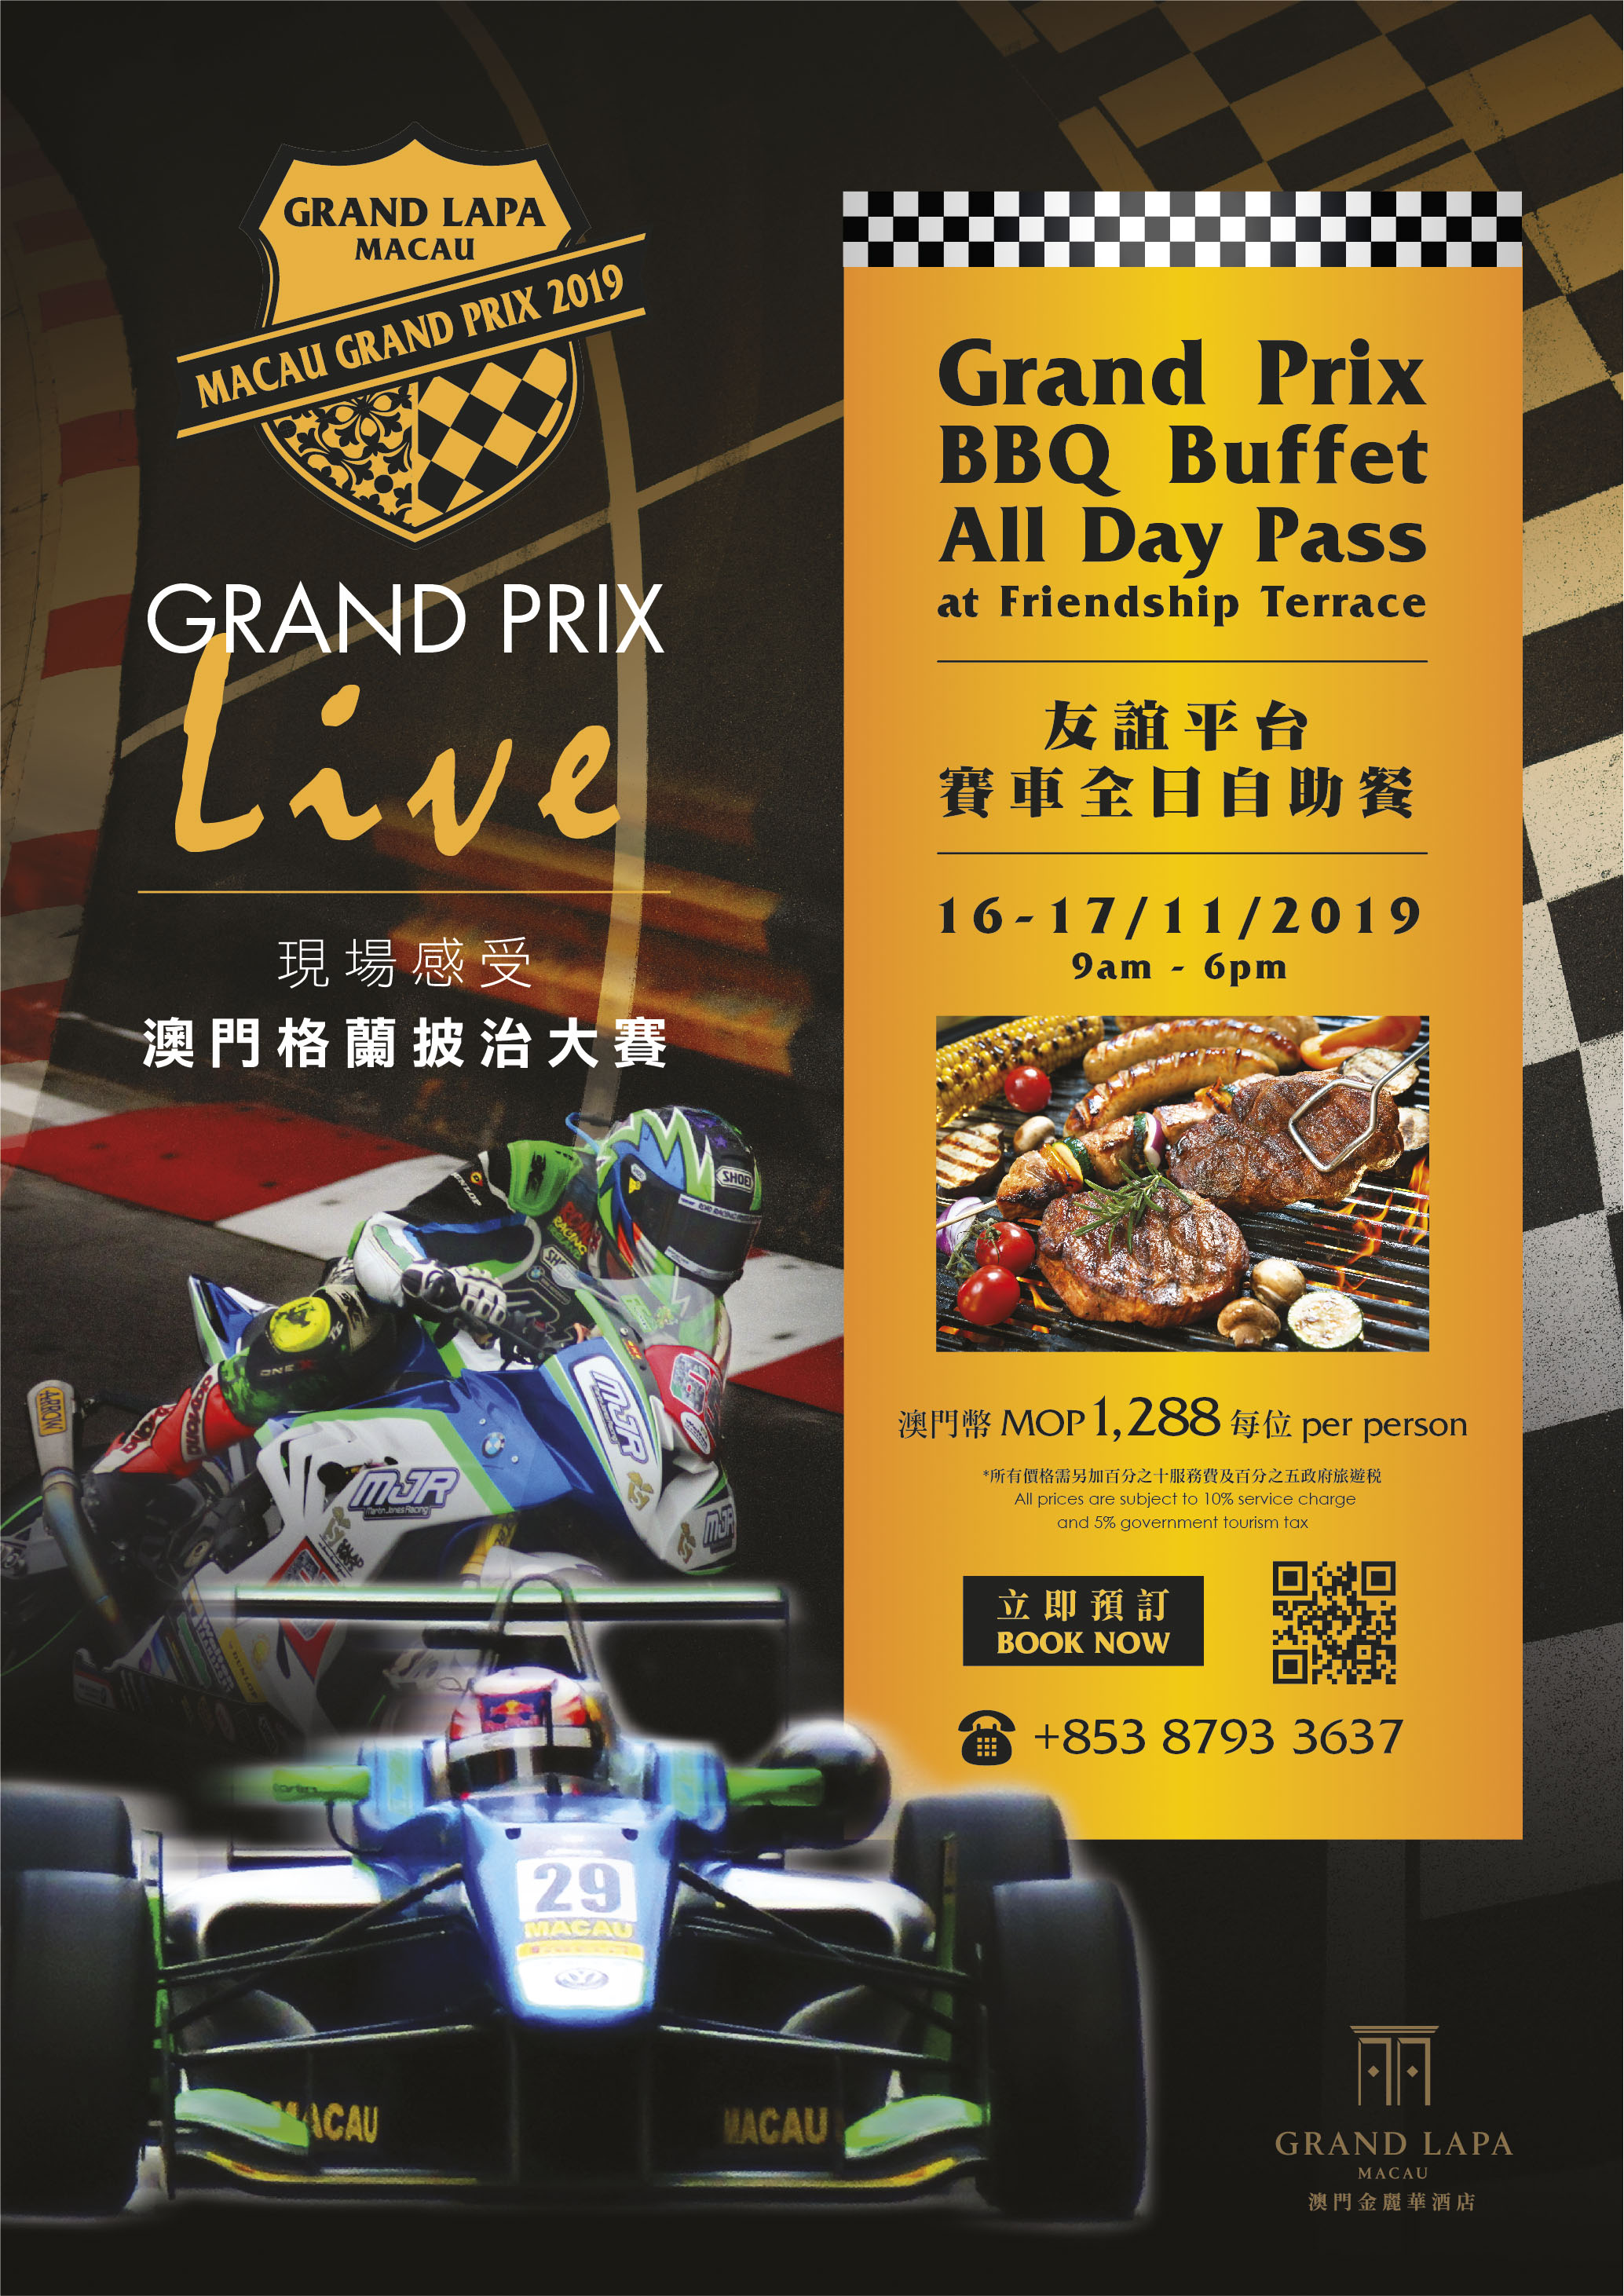 Grand Prix at Grand Lapa, Macau 2019